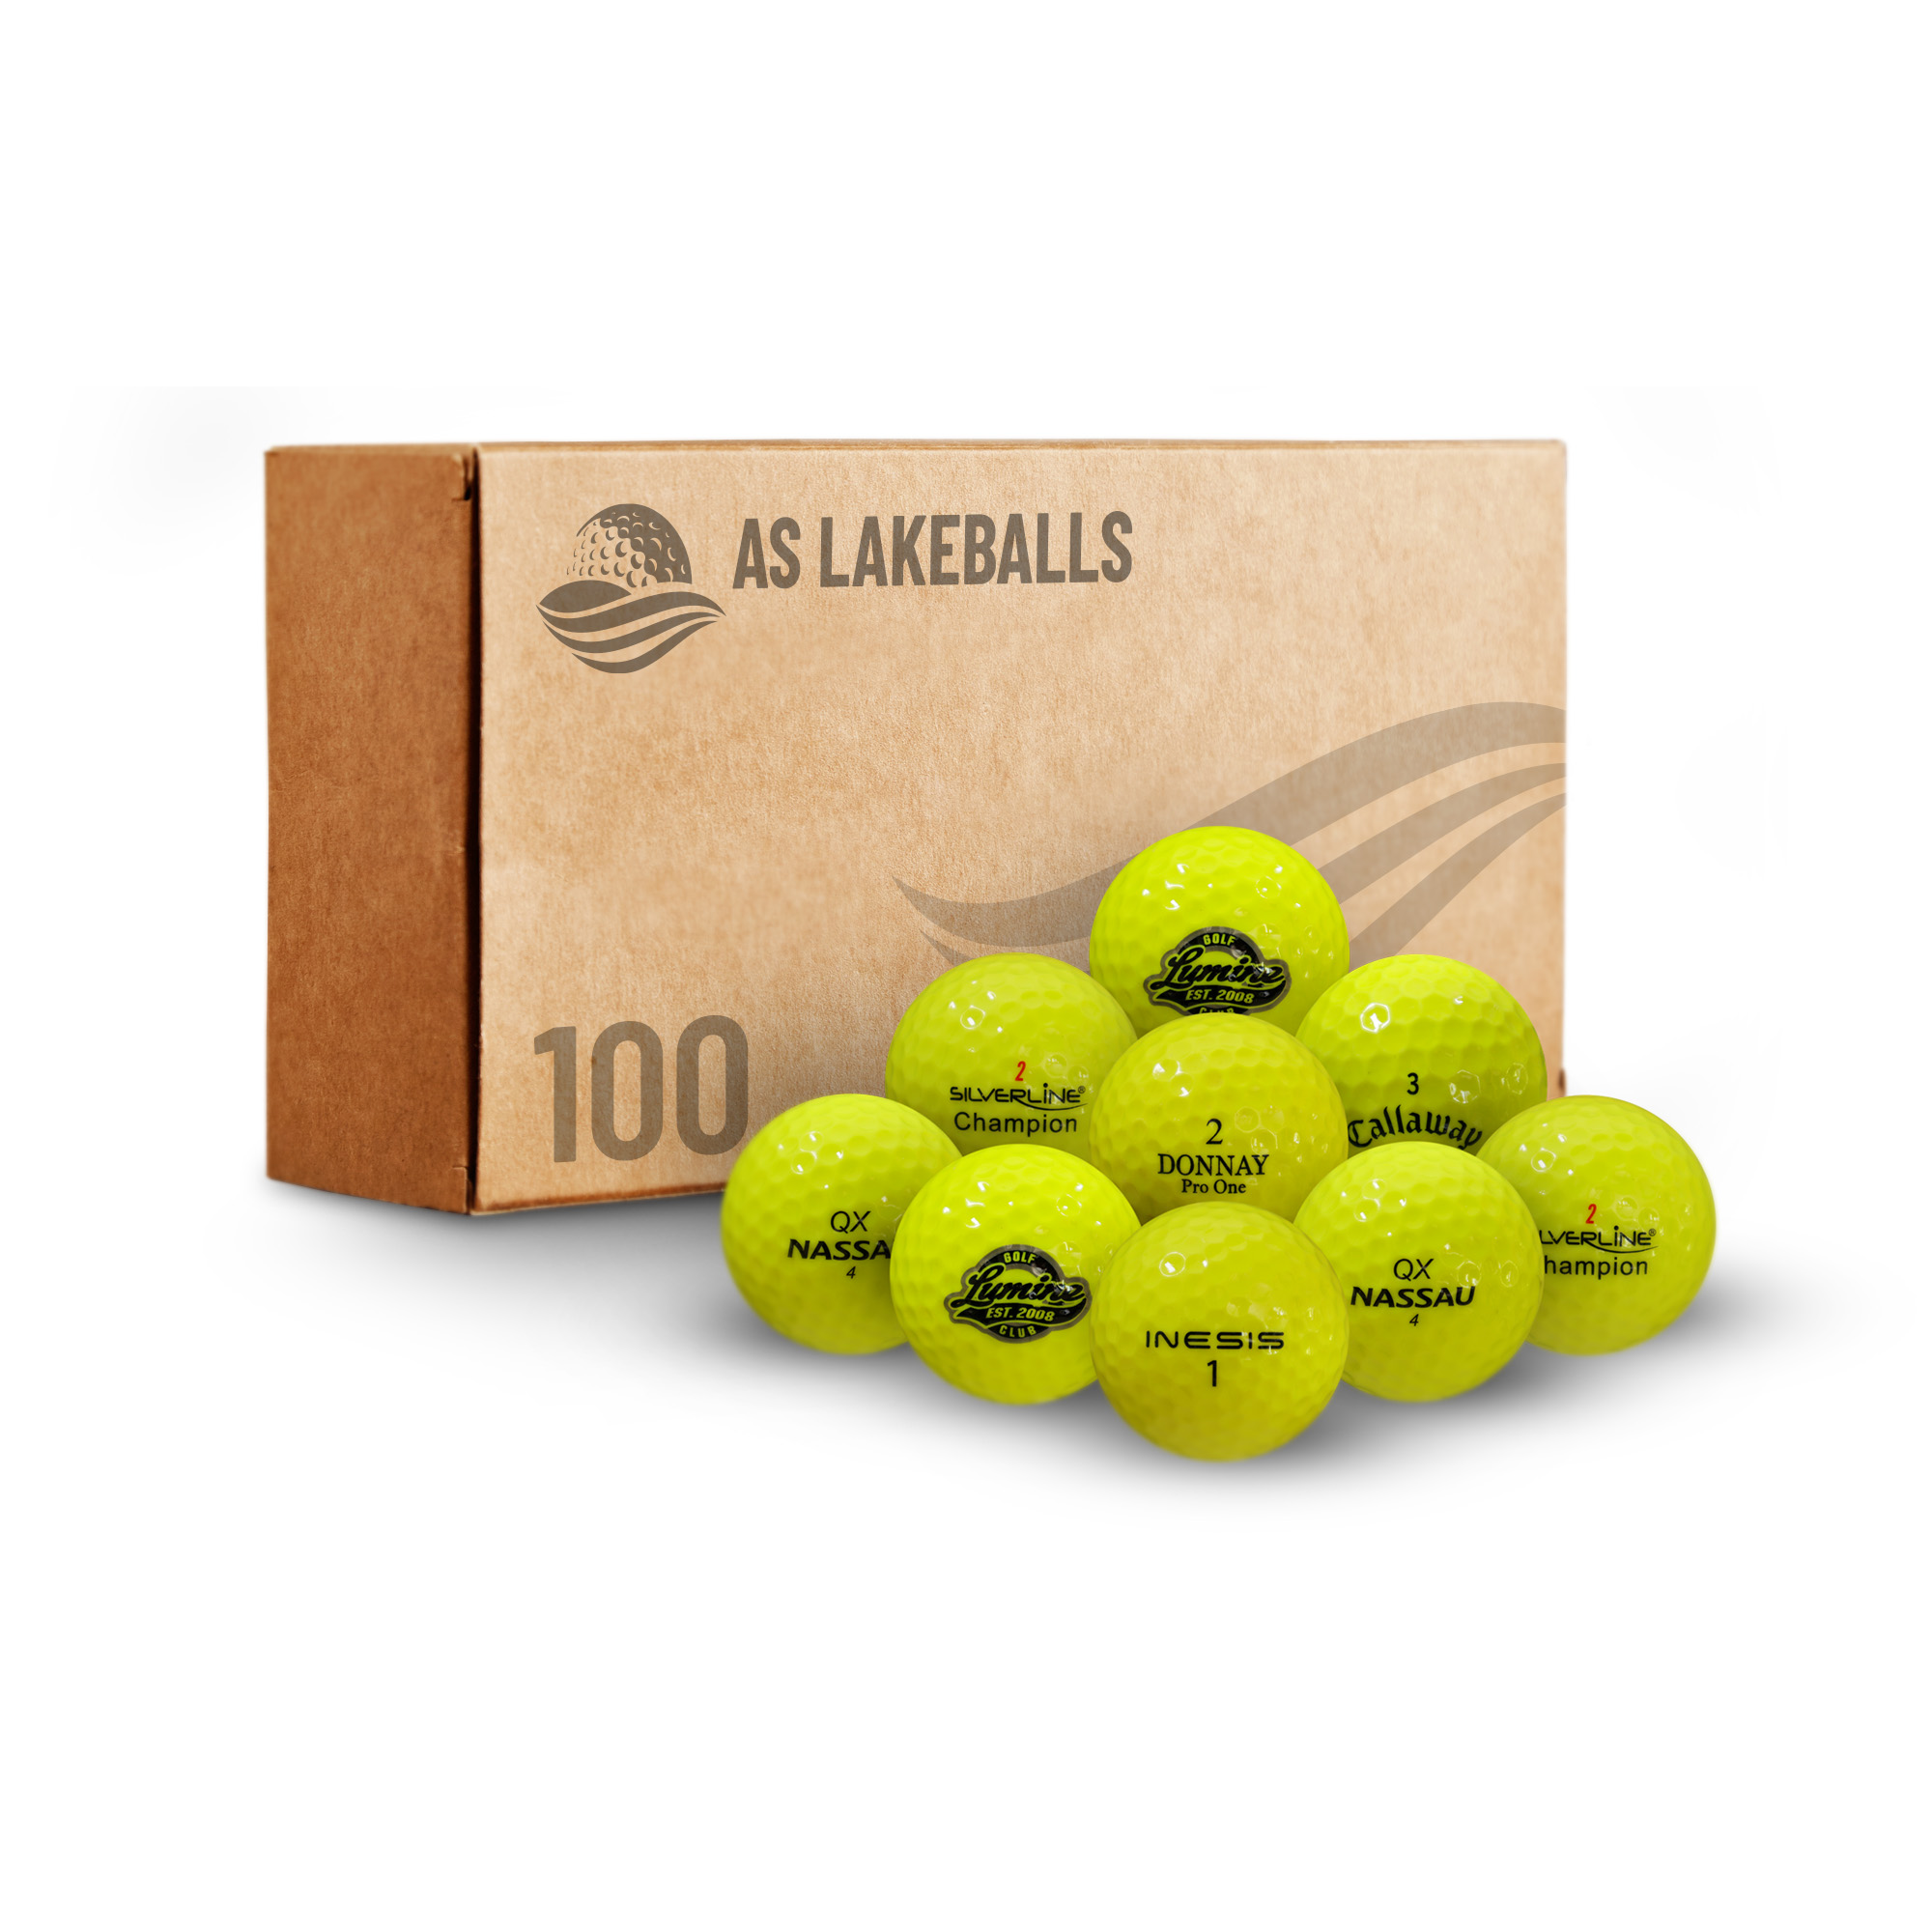 100 gelbe/leuchtgelbe Mix AA bei AS Lakeballs günstig kaufen